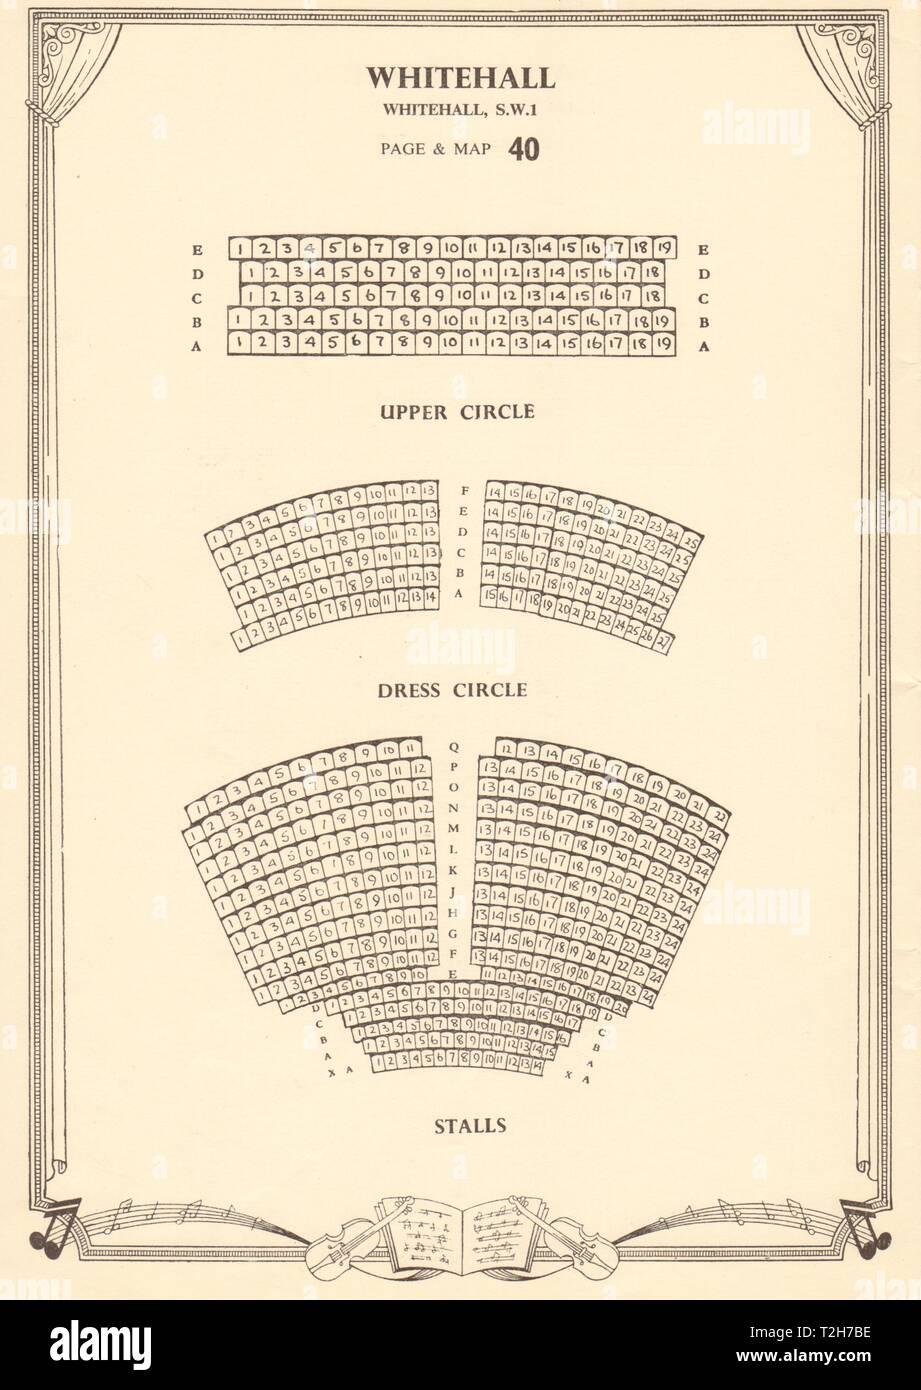 Trafalgar Studios Seating Chart